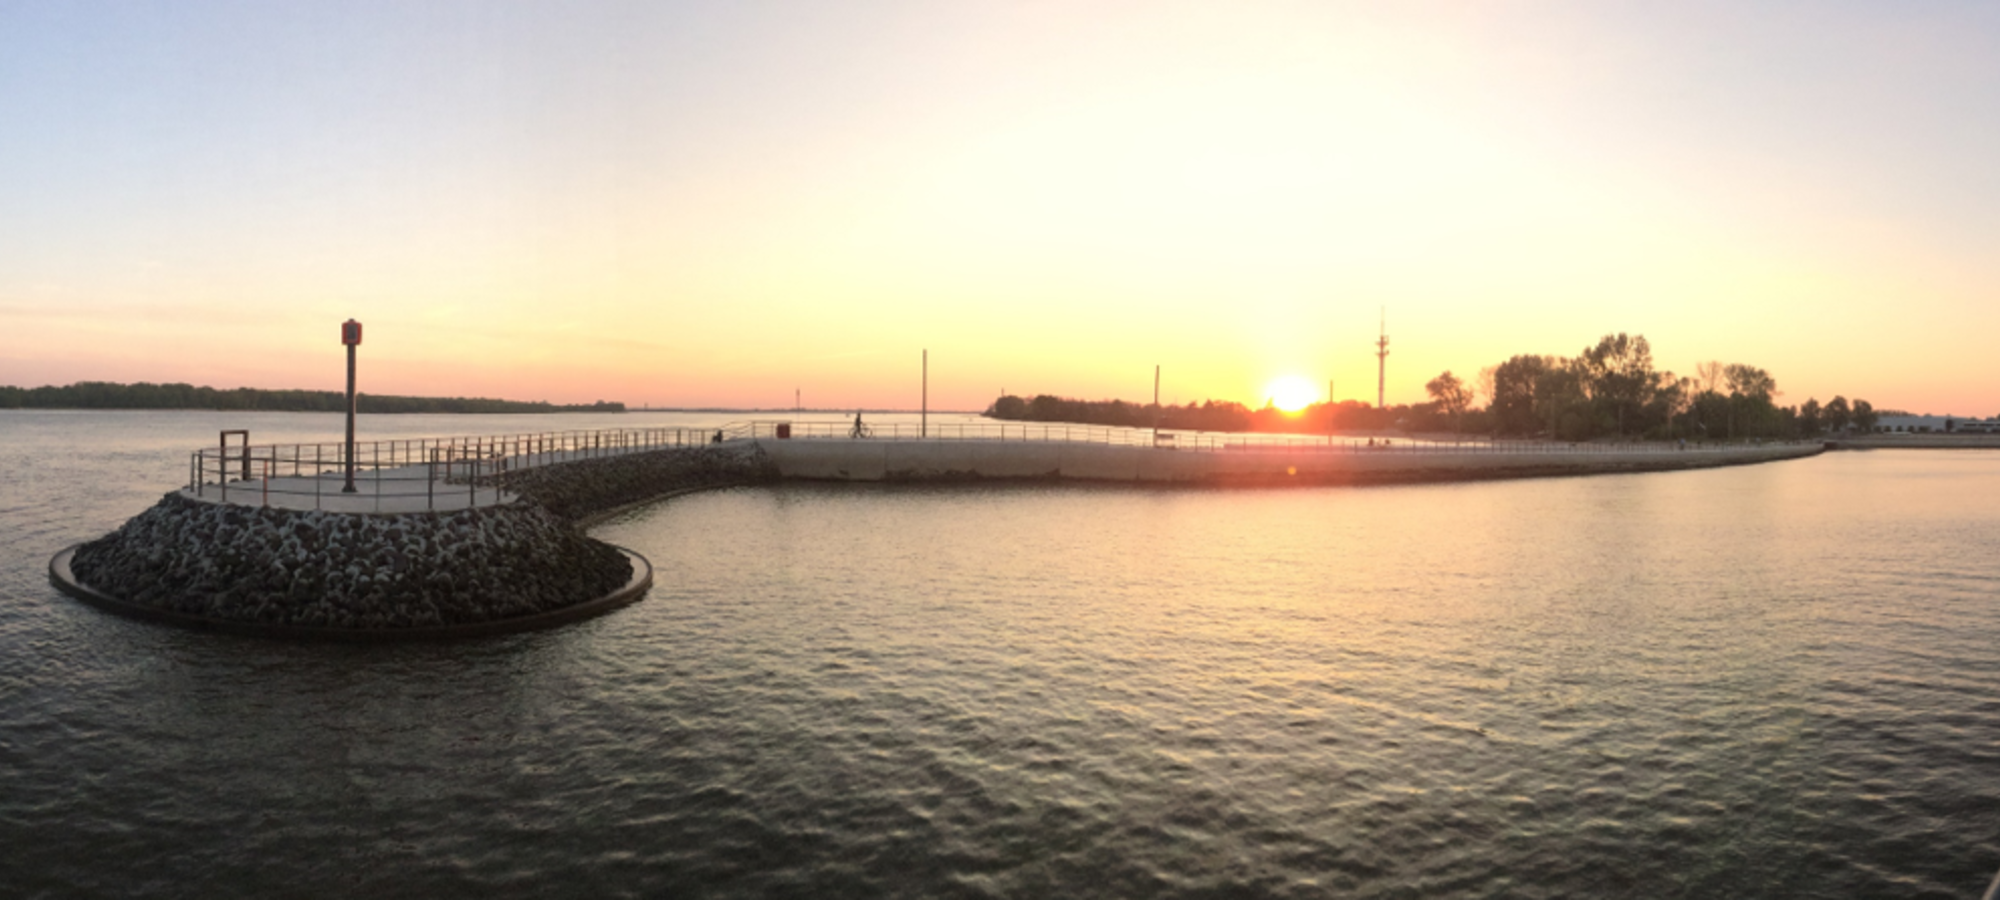 Schulauer Hafen in Wedel bei Sonnenuntergang